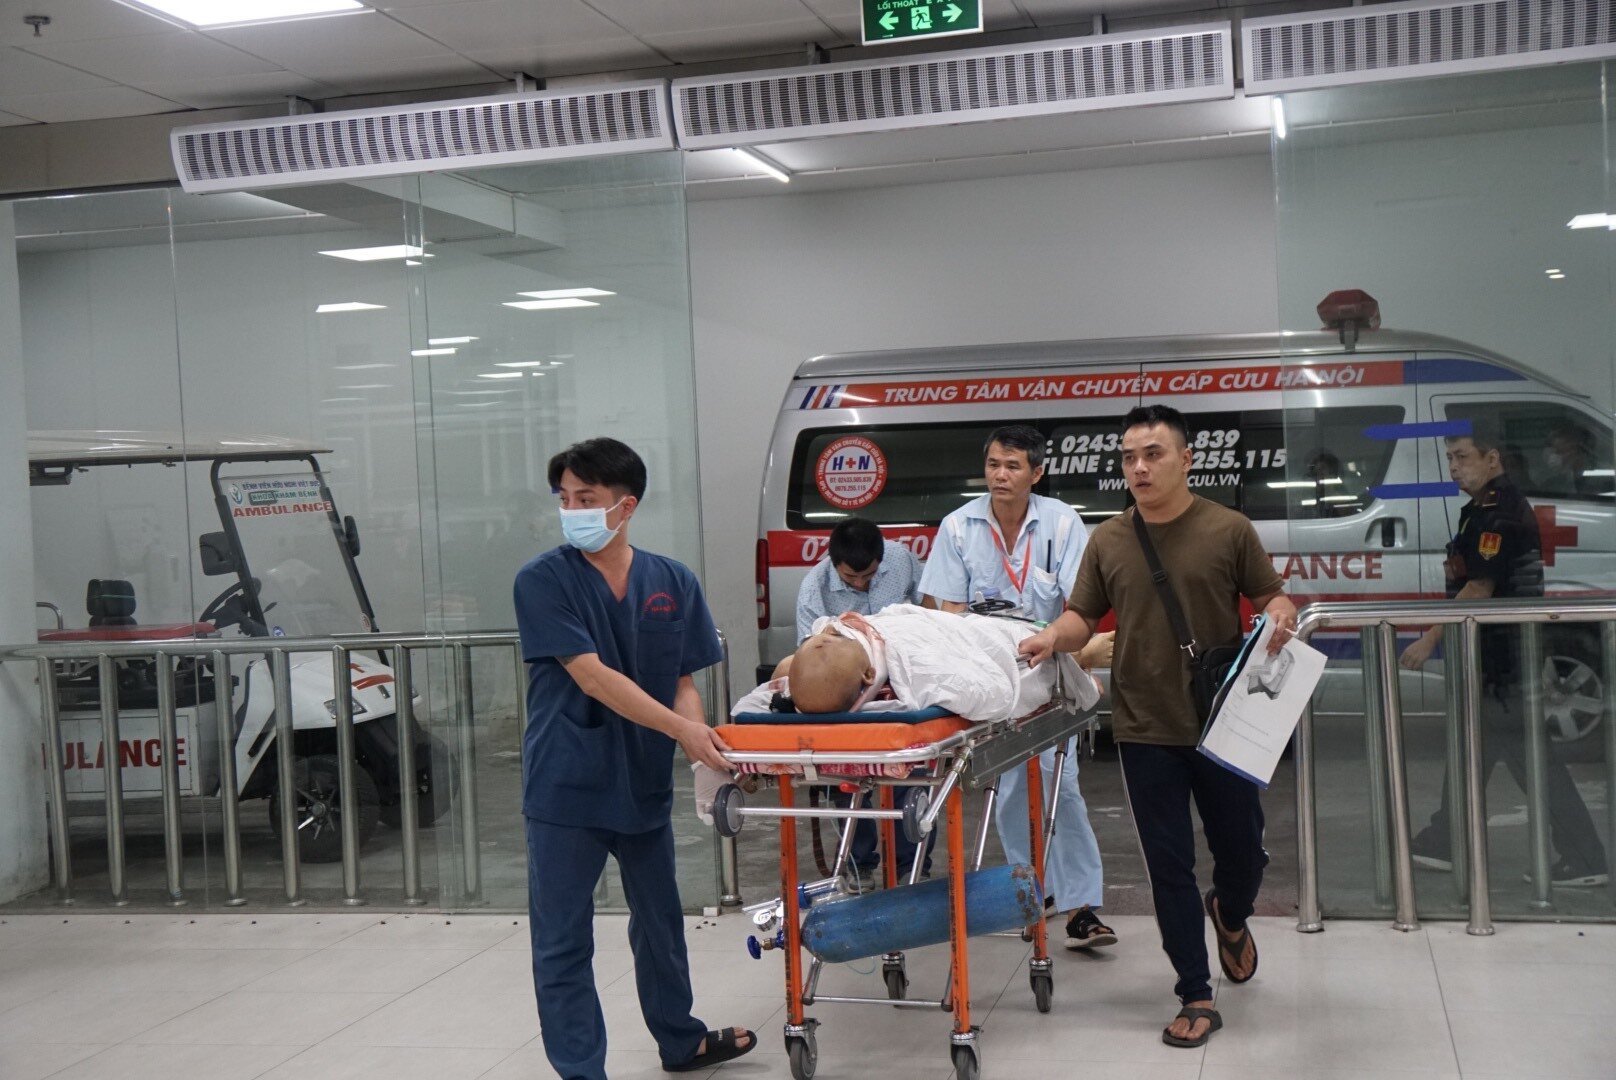  24 giờ trực cấp cứu tại bệnh viện ngoại khoa lớn nhất cả nước - 8